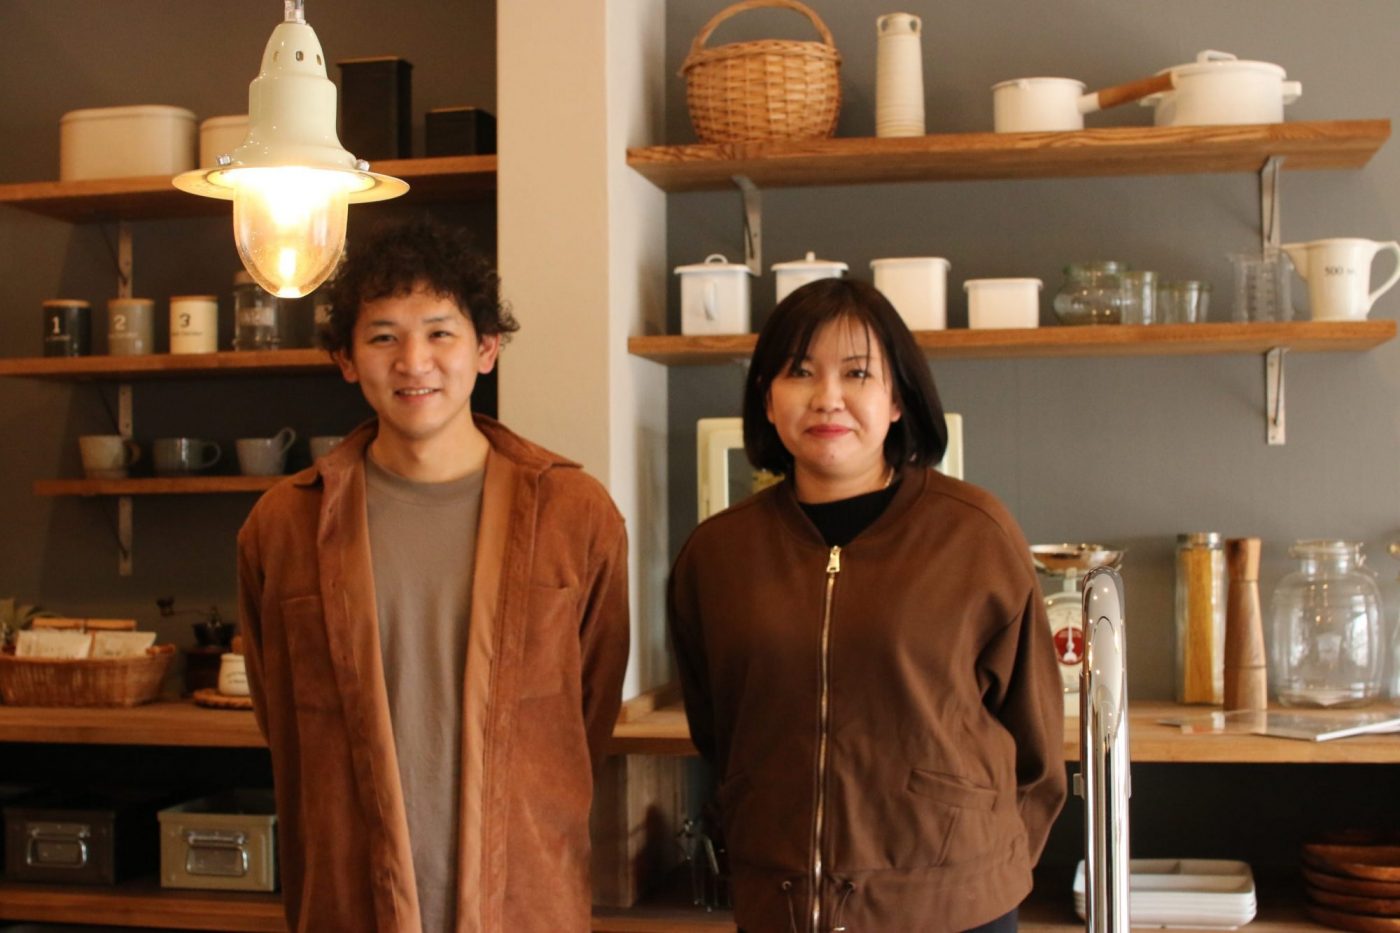 代表の弓場さん（右）と営業の横山さん（左）。横山さんは前職で自動販売機にジュースを入れる営業をされてたんだとか。